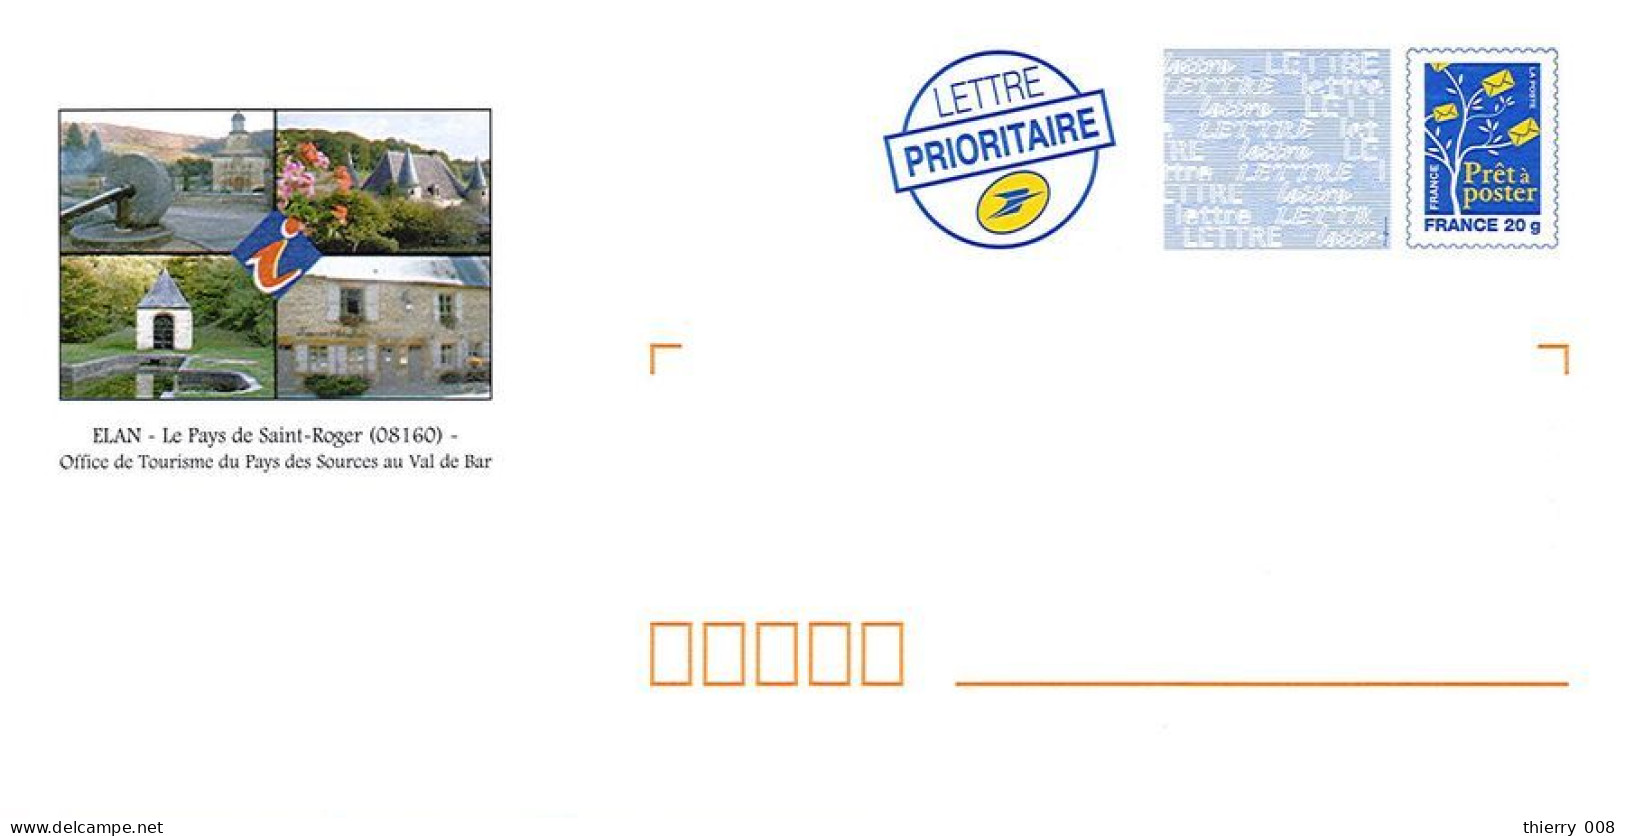 045 Enveloppes Prêt à Poster PAP 08 Ardennes Elan Diverses Vues Le Pays De Saint Roger Office De Tourisme Du Val De Bar - Prêts-à-poster:Overprinting/Blue Logo